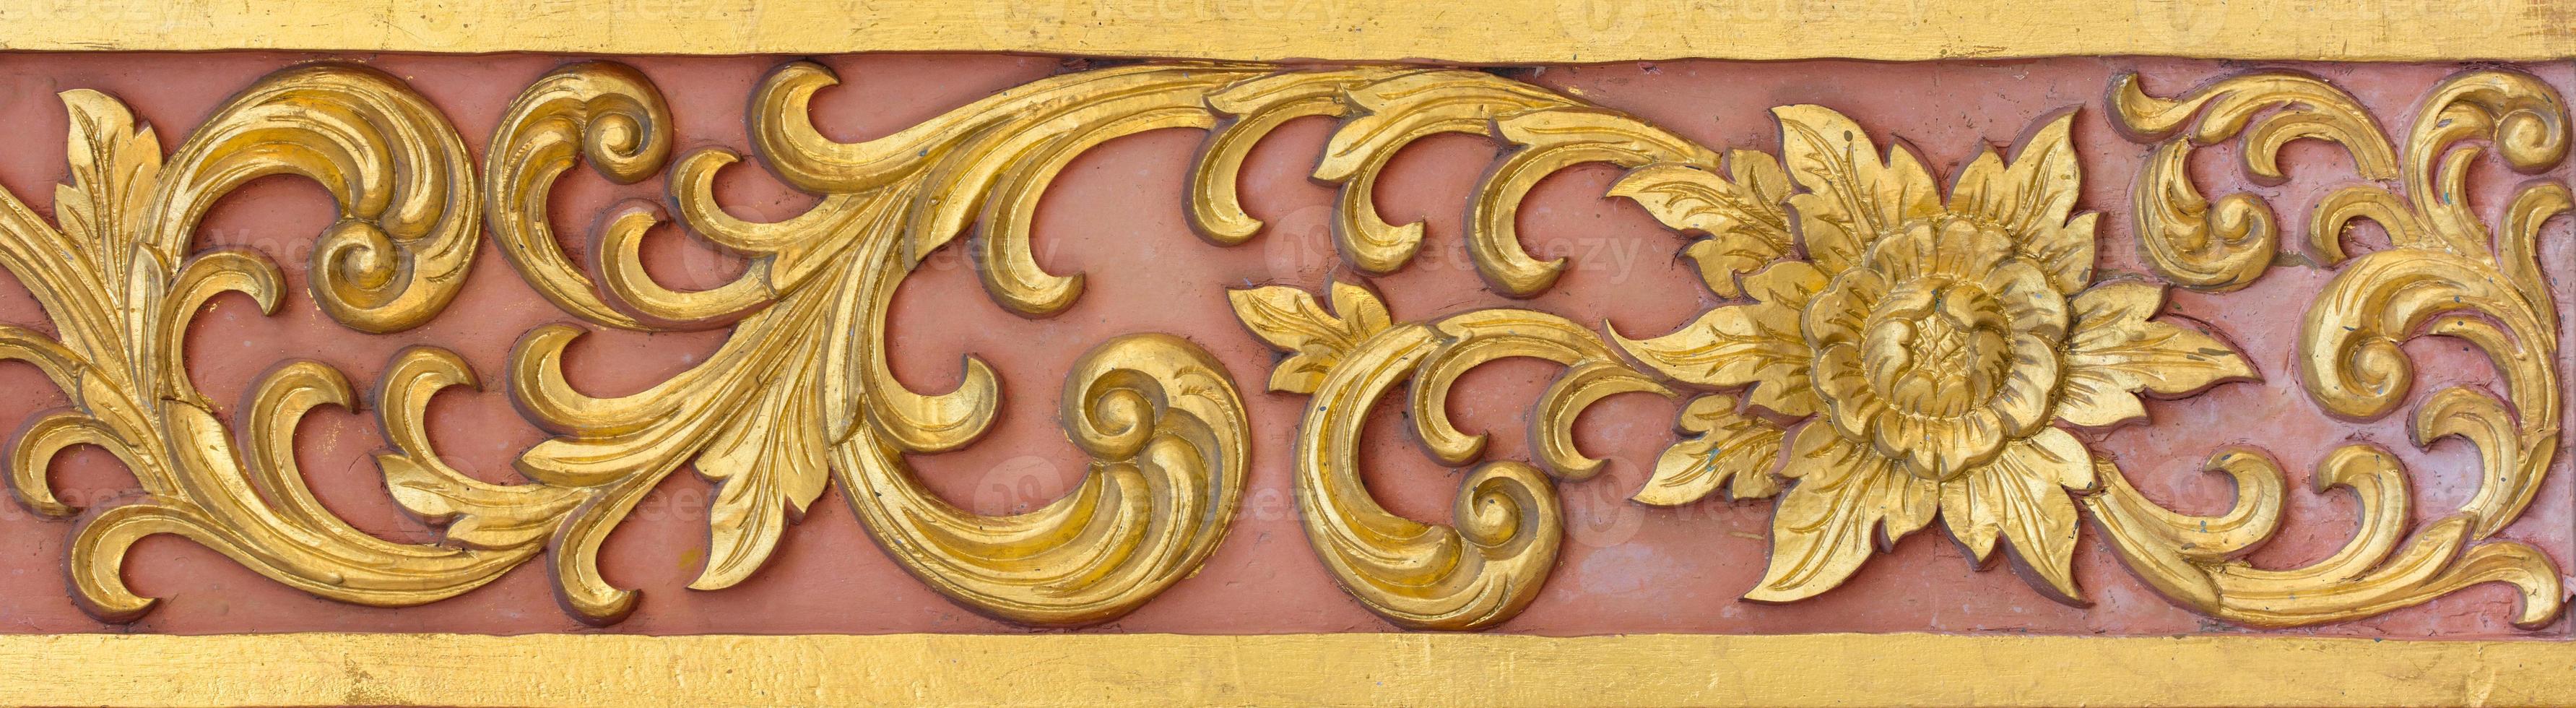 modelo de oro flor tallado en estuco diseño de nativo muro, tailandés estilo en templo foto